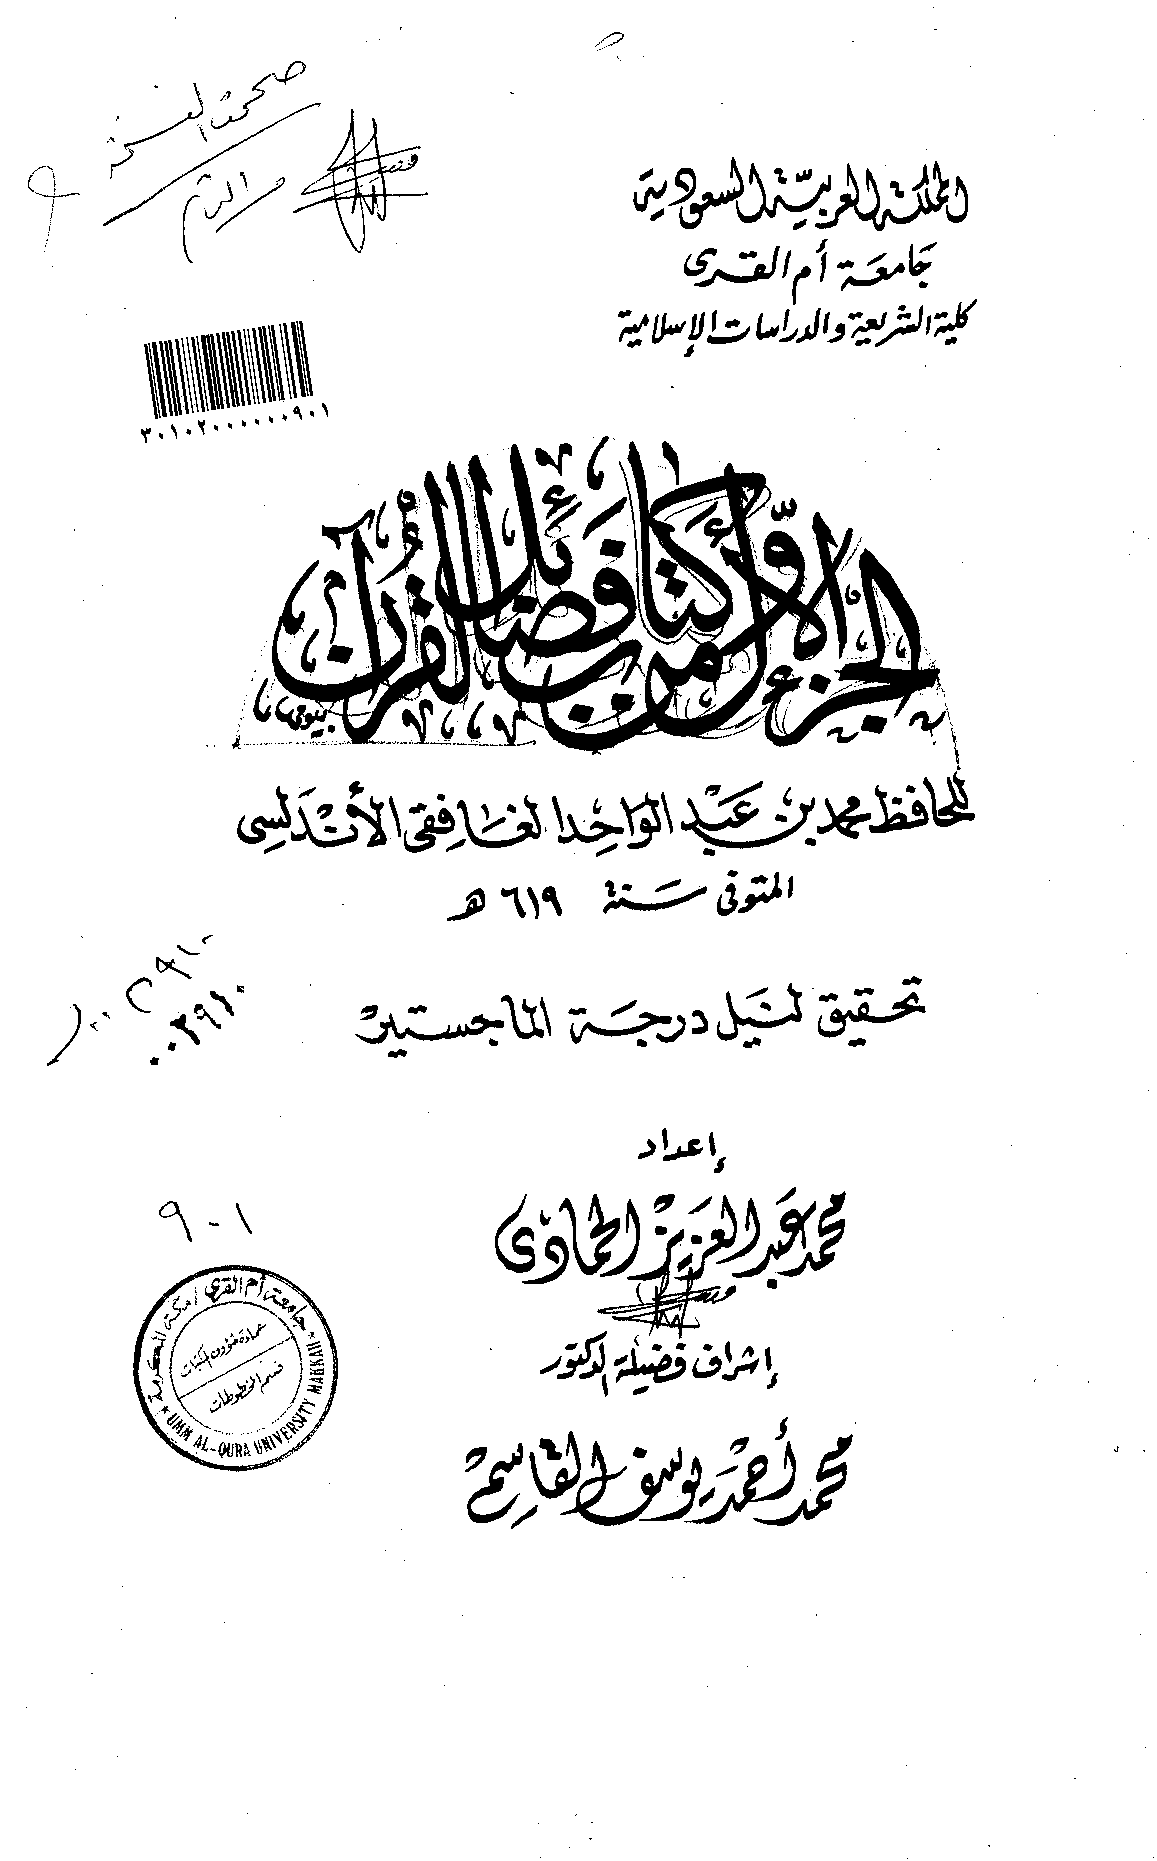 الجزء الأول من كتاب فضائل القرآن